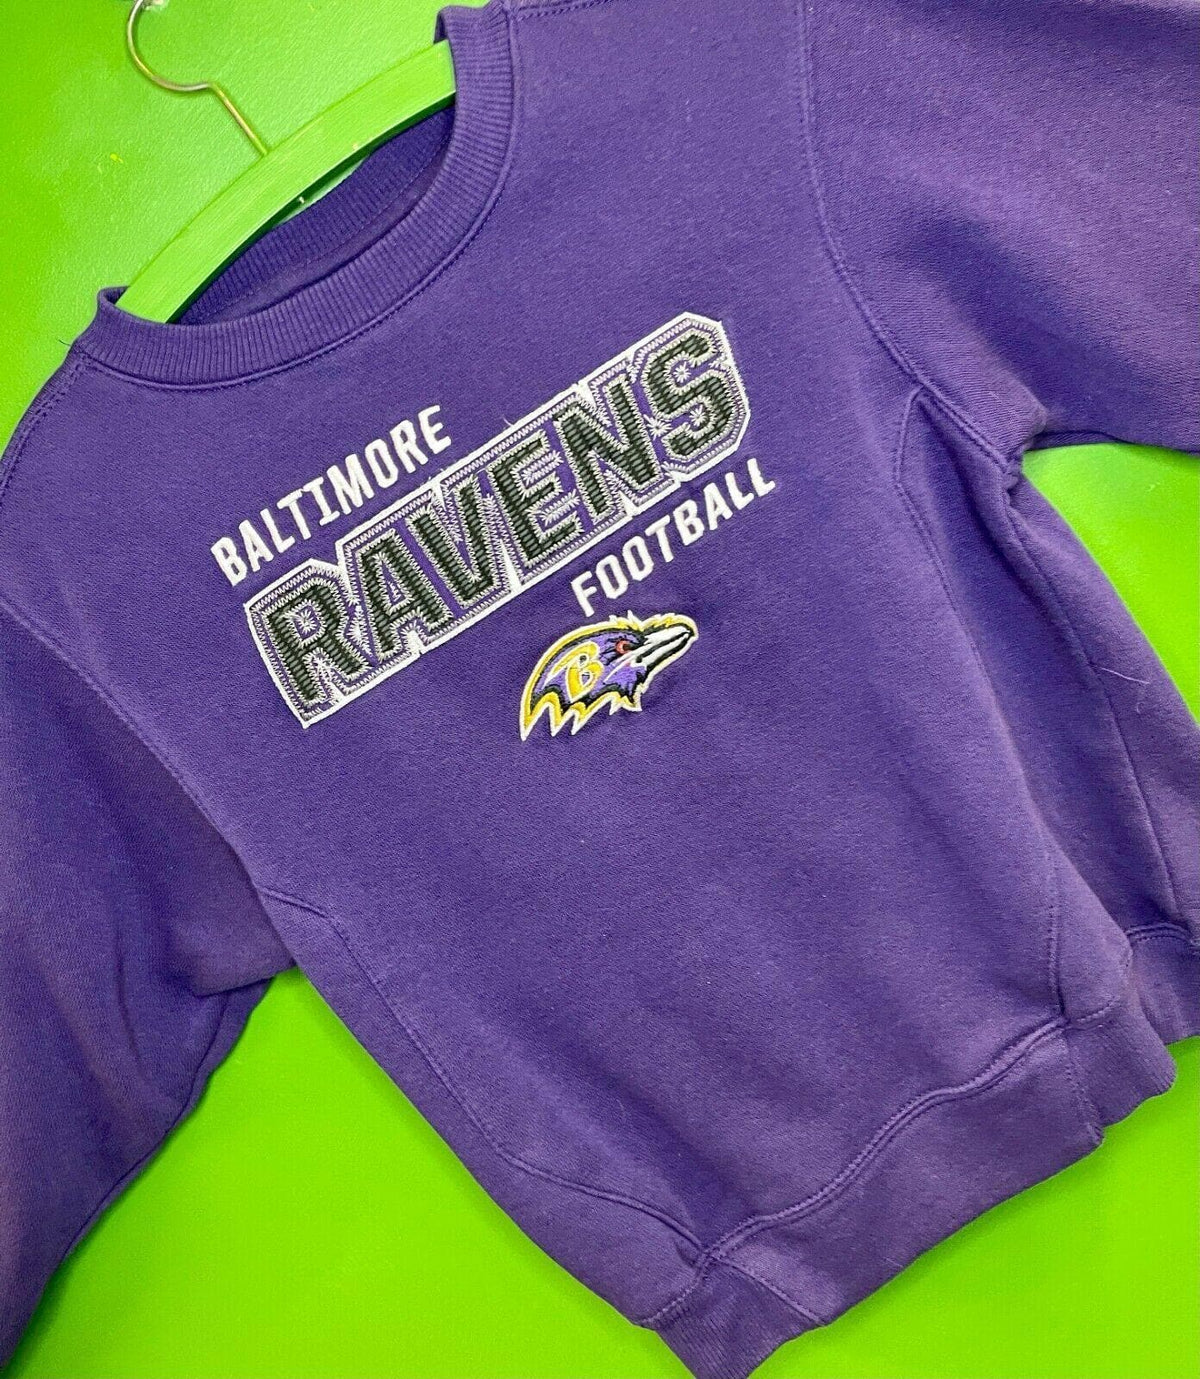 NFL Baltimore Ravens Stitched Sweatshirt Kids' Medium 5-6